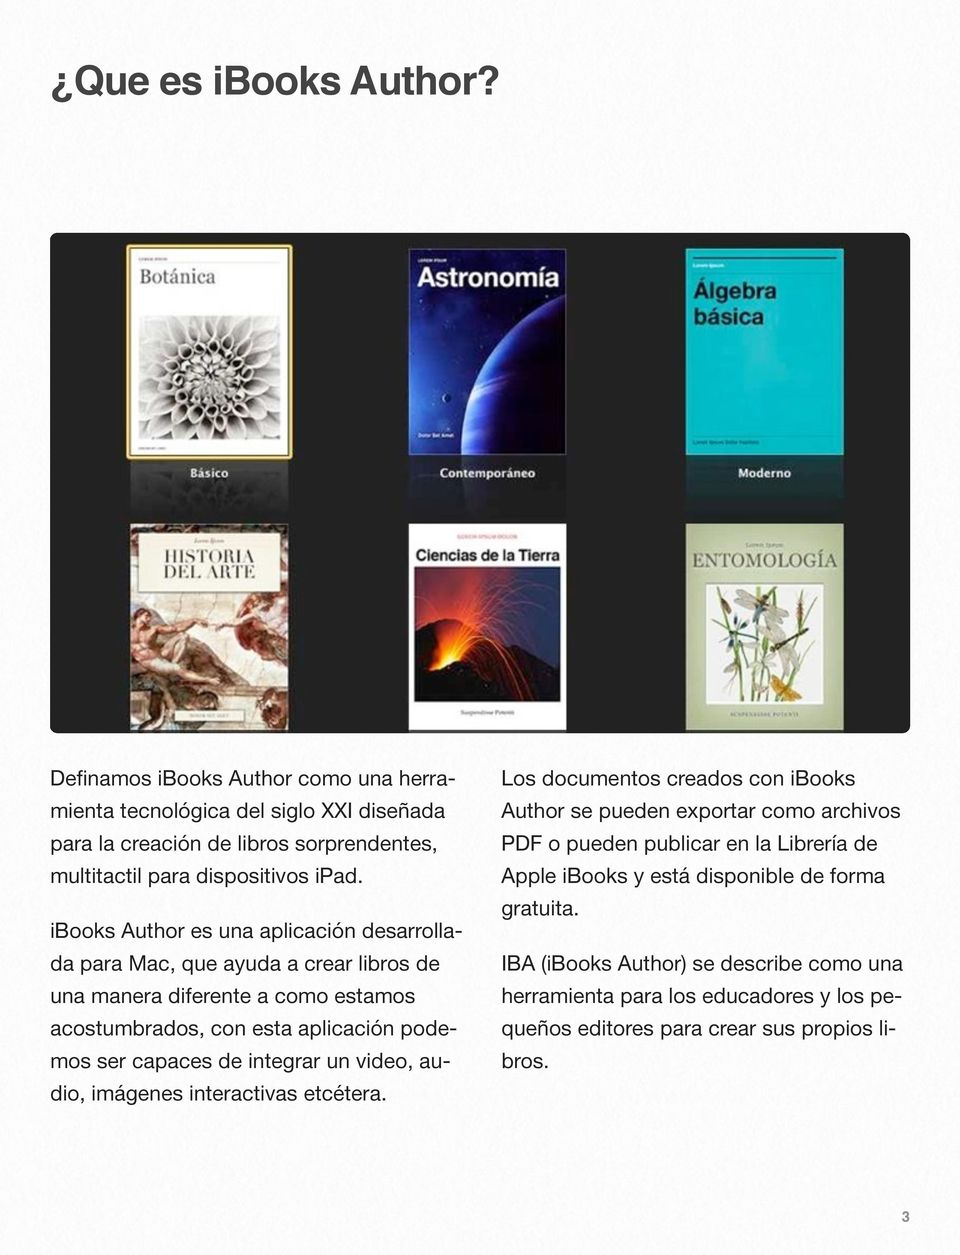 ibooks Author es una aplicación desarrollada para Mac, que ayuda a crear libros de una manera diferente a como estamos acostumbrados, con esta aplicación podemos ser capaces de